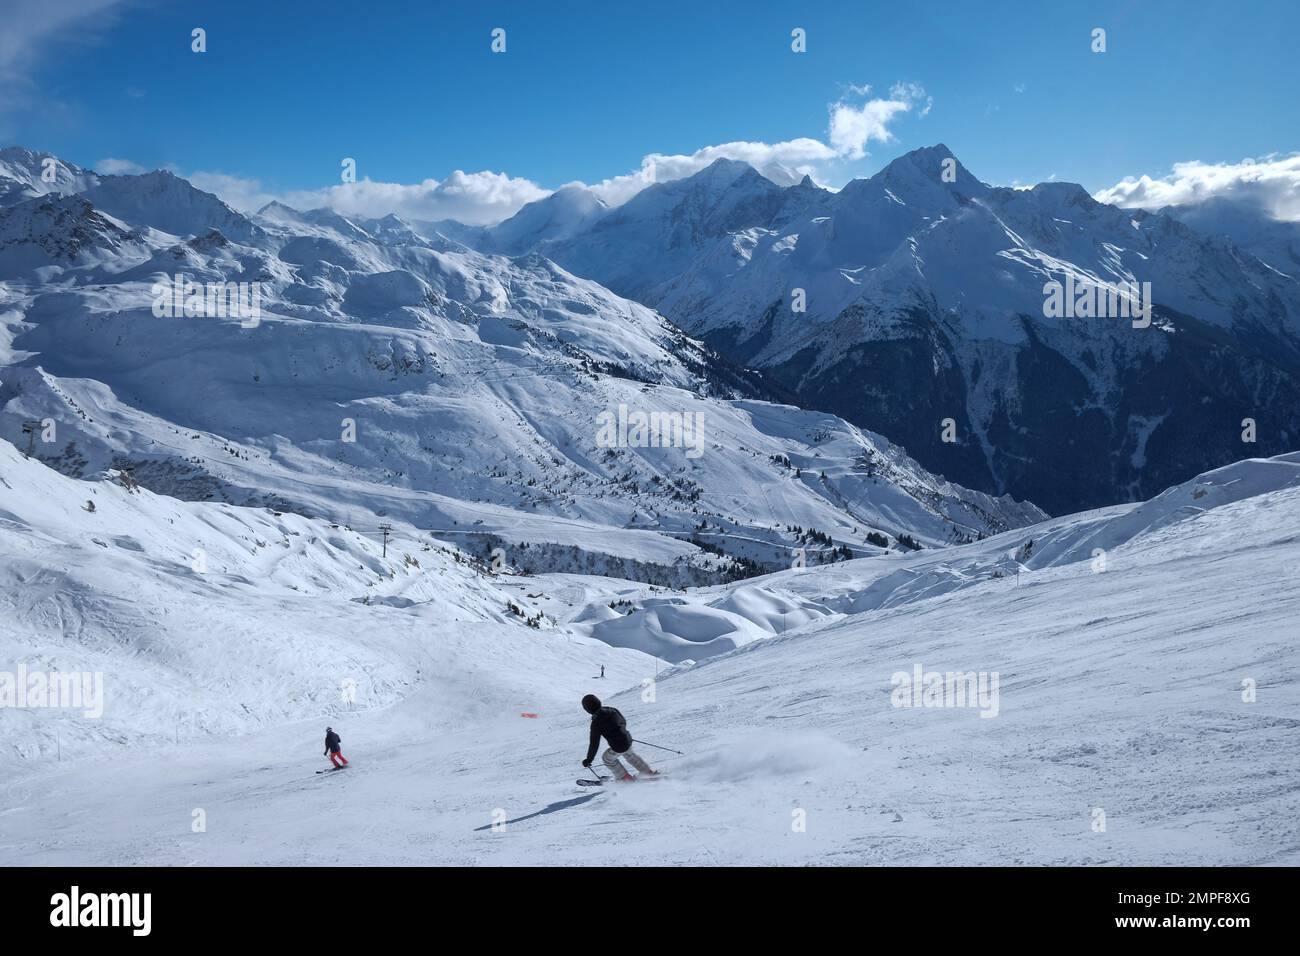 Michael Bunel / Le Pictorium - Skifahren in den Alpen - 3/1/2016 - Savoie / Frankreich / La plagne - Illustration Skiurlaub. 23. Januar 2023 La plagn Stockfoto